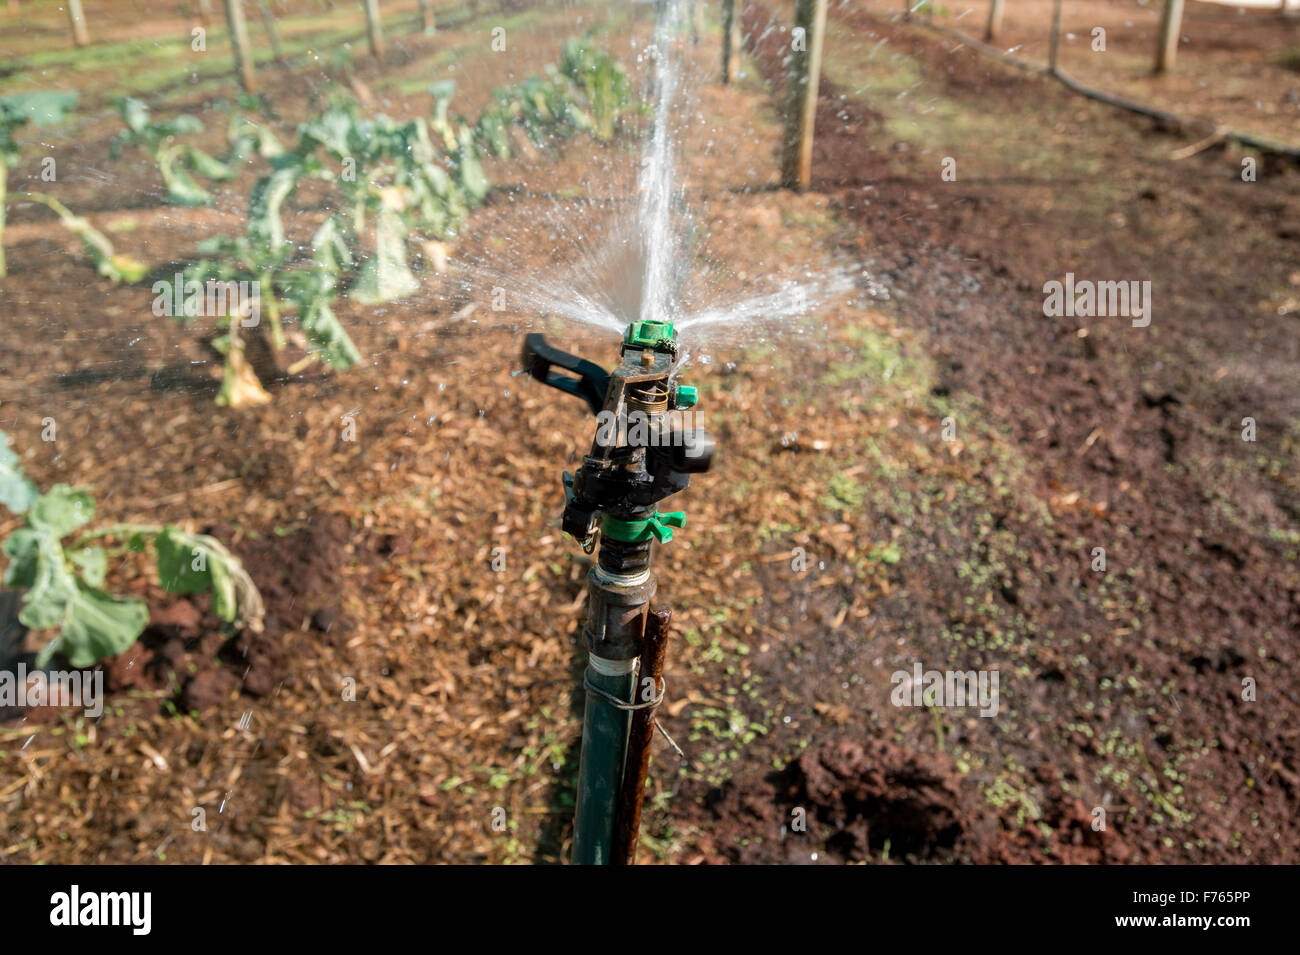 JOHANNESBURG, SUD AFRICA - sistema di irrigazione irrigazione sul raccolto farm. Foto Stock